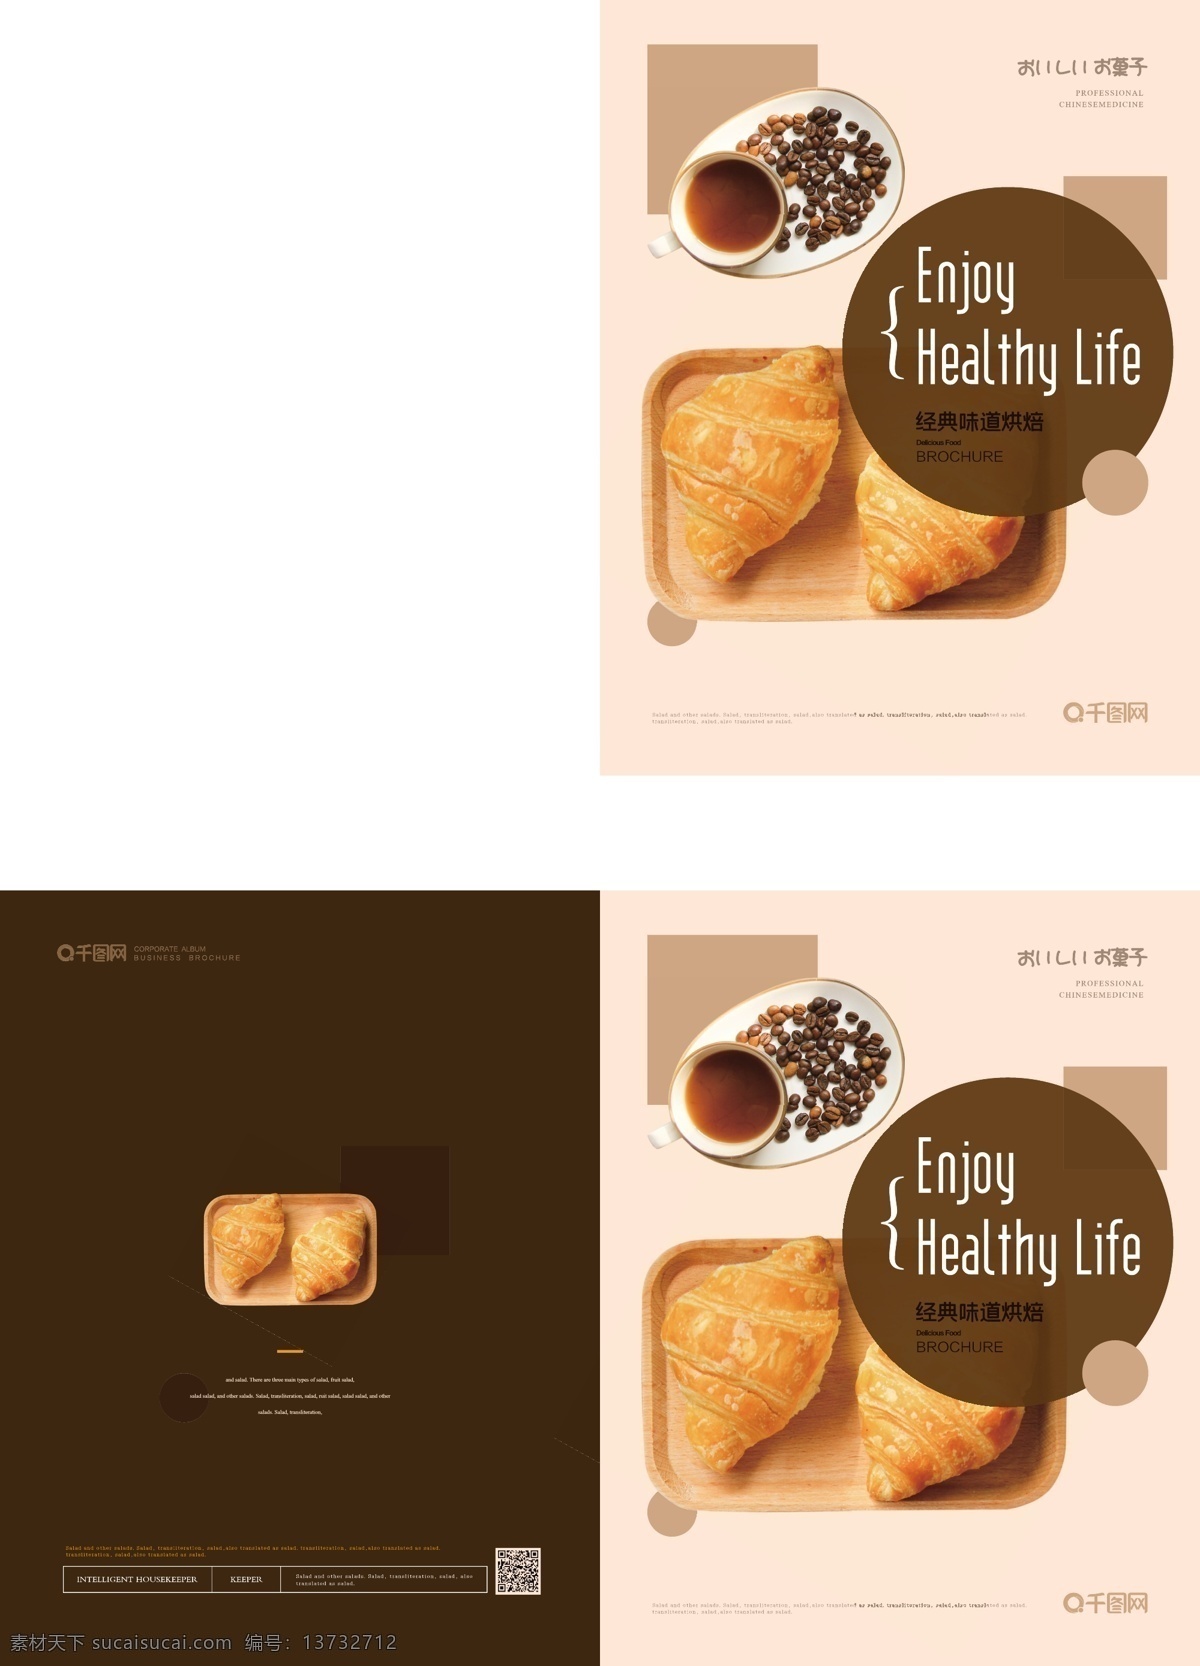 简约 清新 烘焙 食品 画册 封面 简约风 面包 咖啡 烘焙店 美食 产品 食品画册